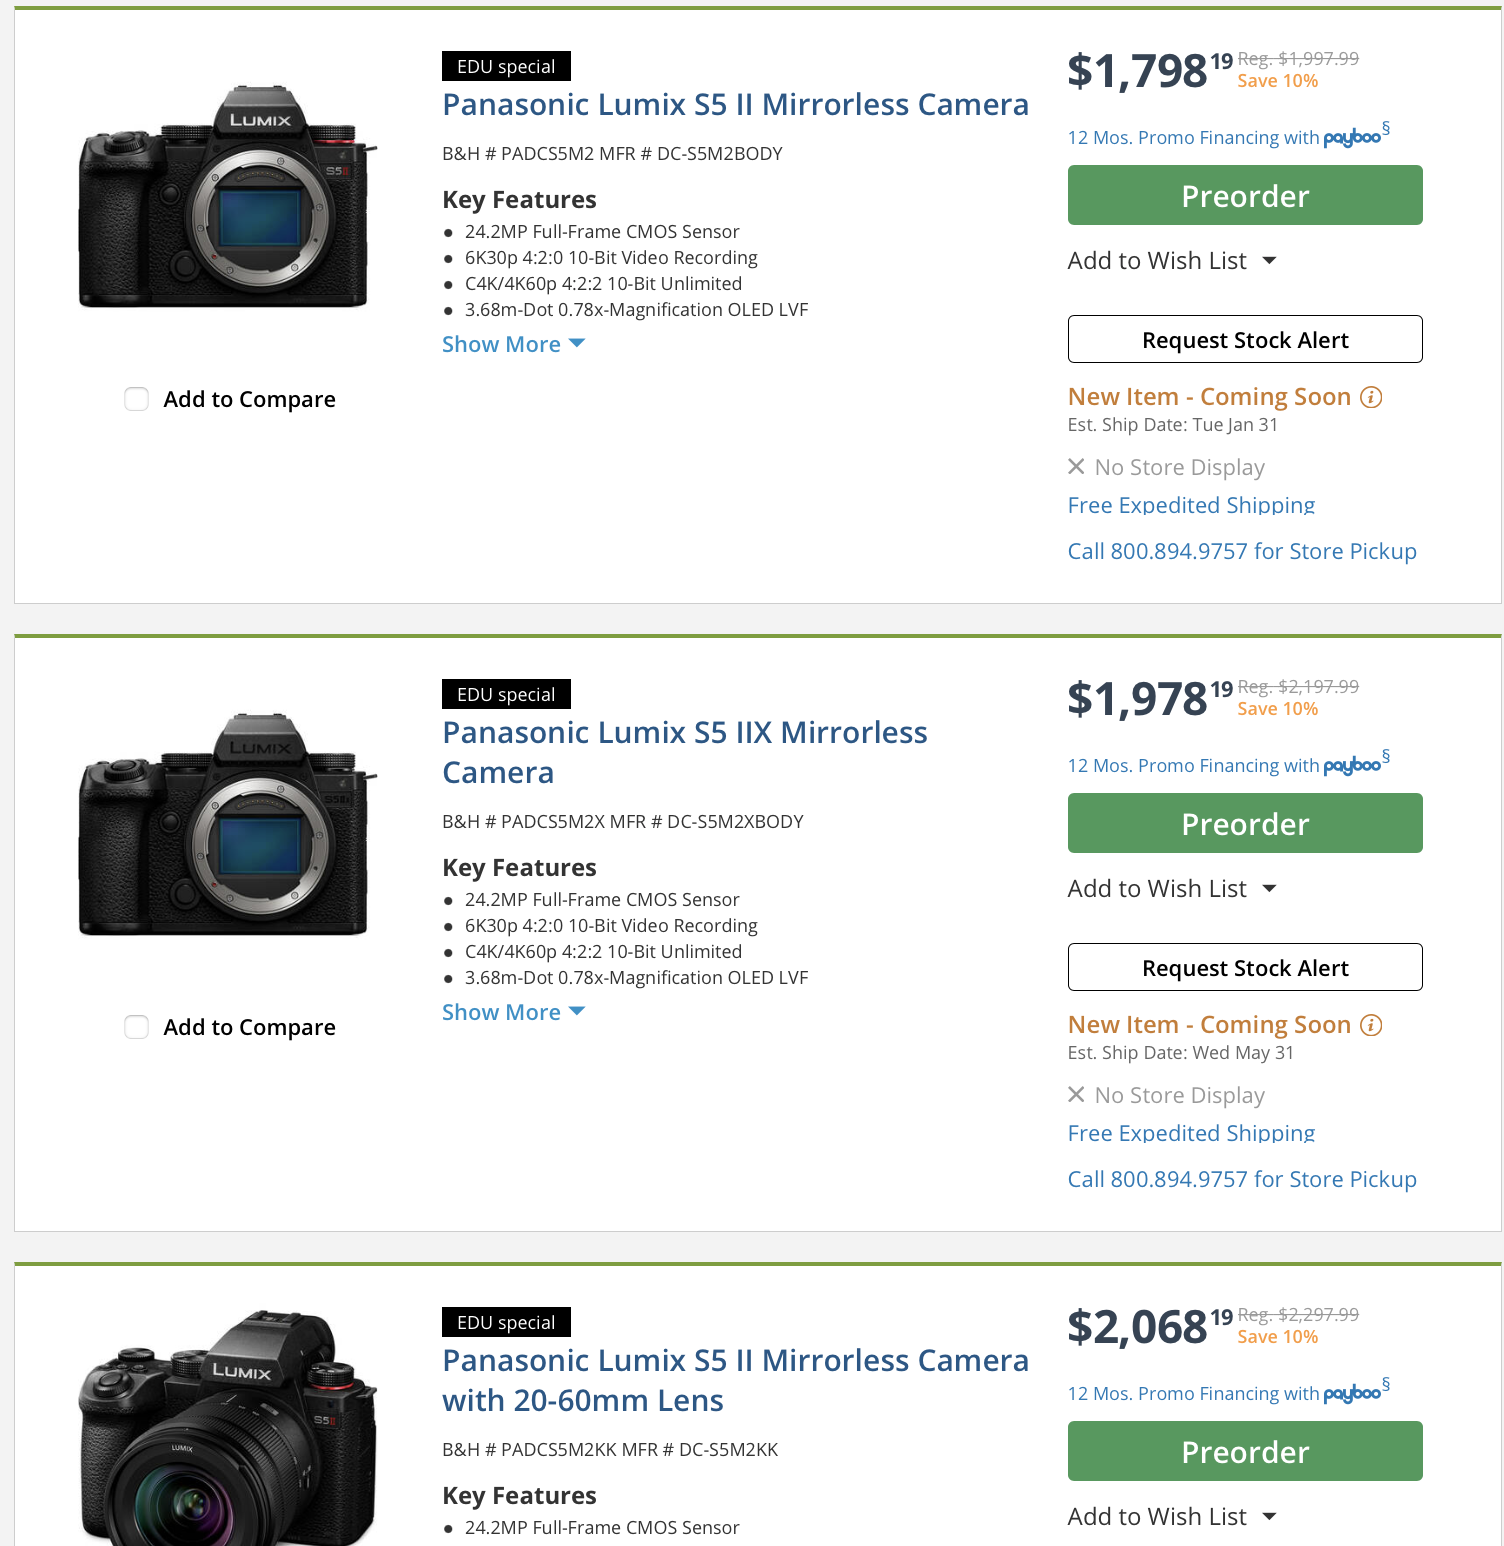 Panasonic Lumix S5 II Mirrorless Camera - DC-S5M2BODY